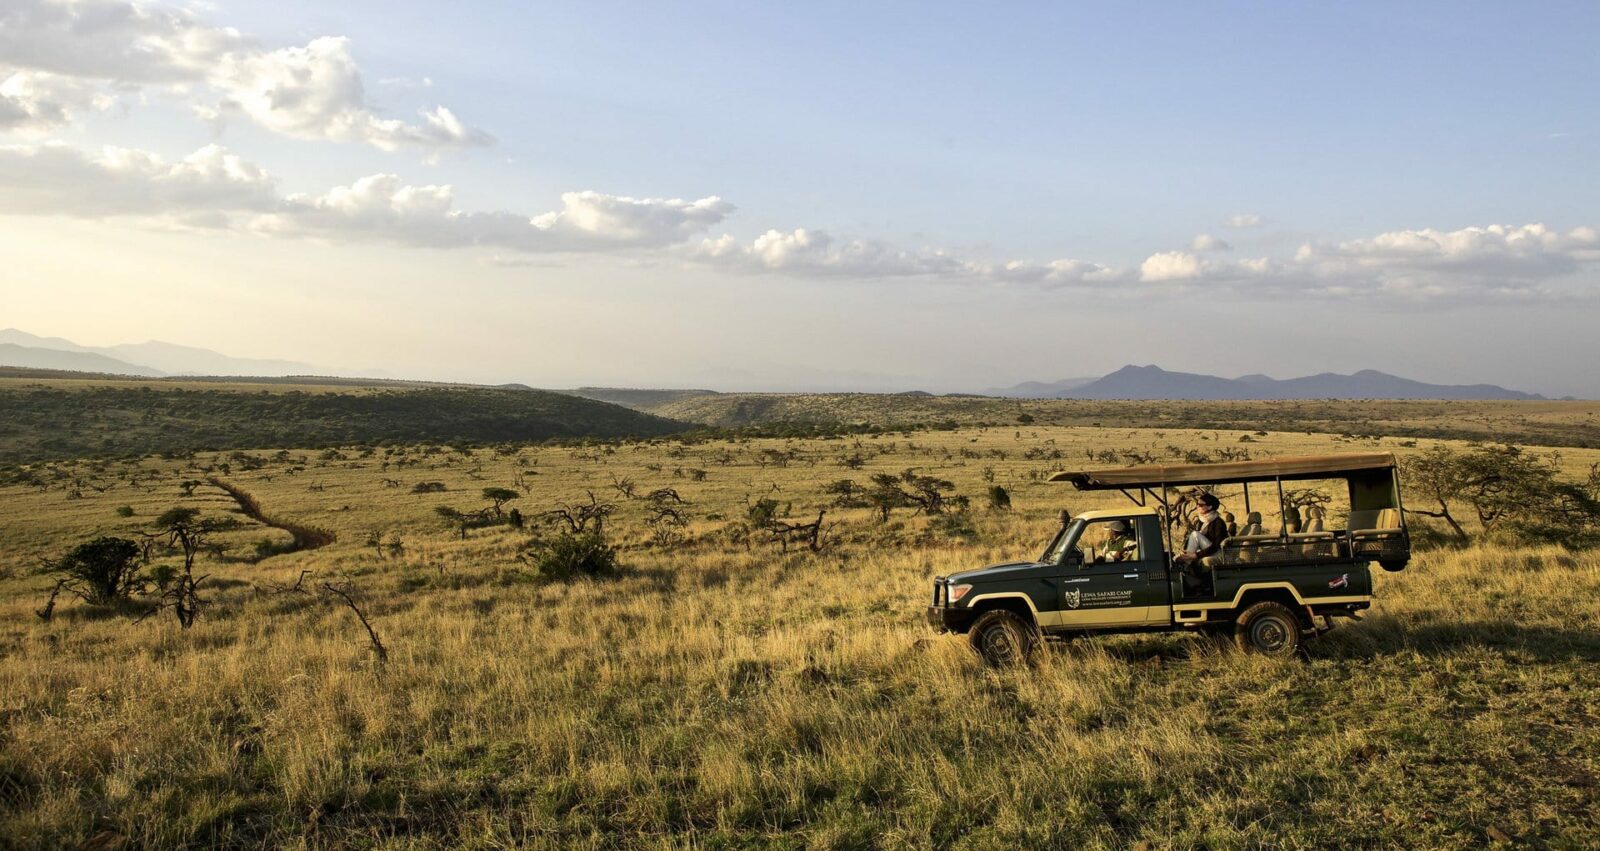 game drive on safari in africa